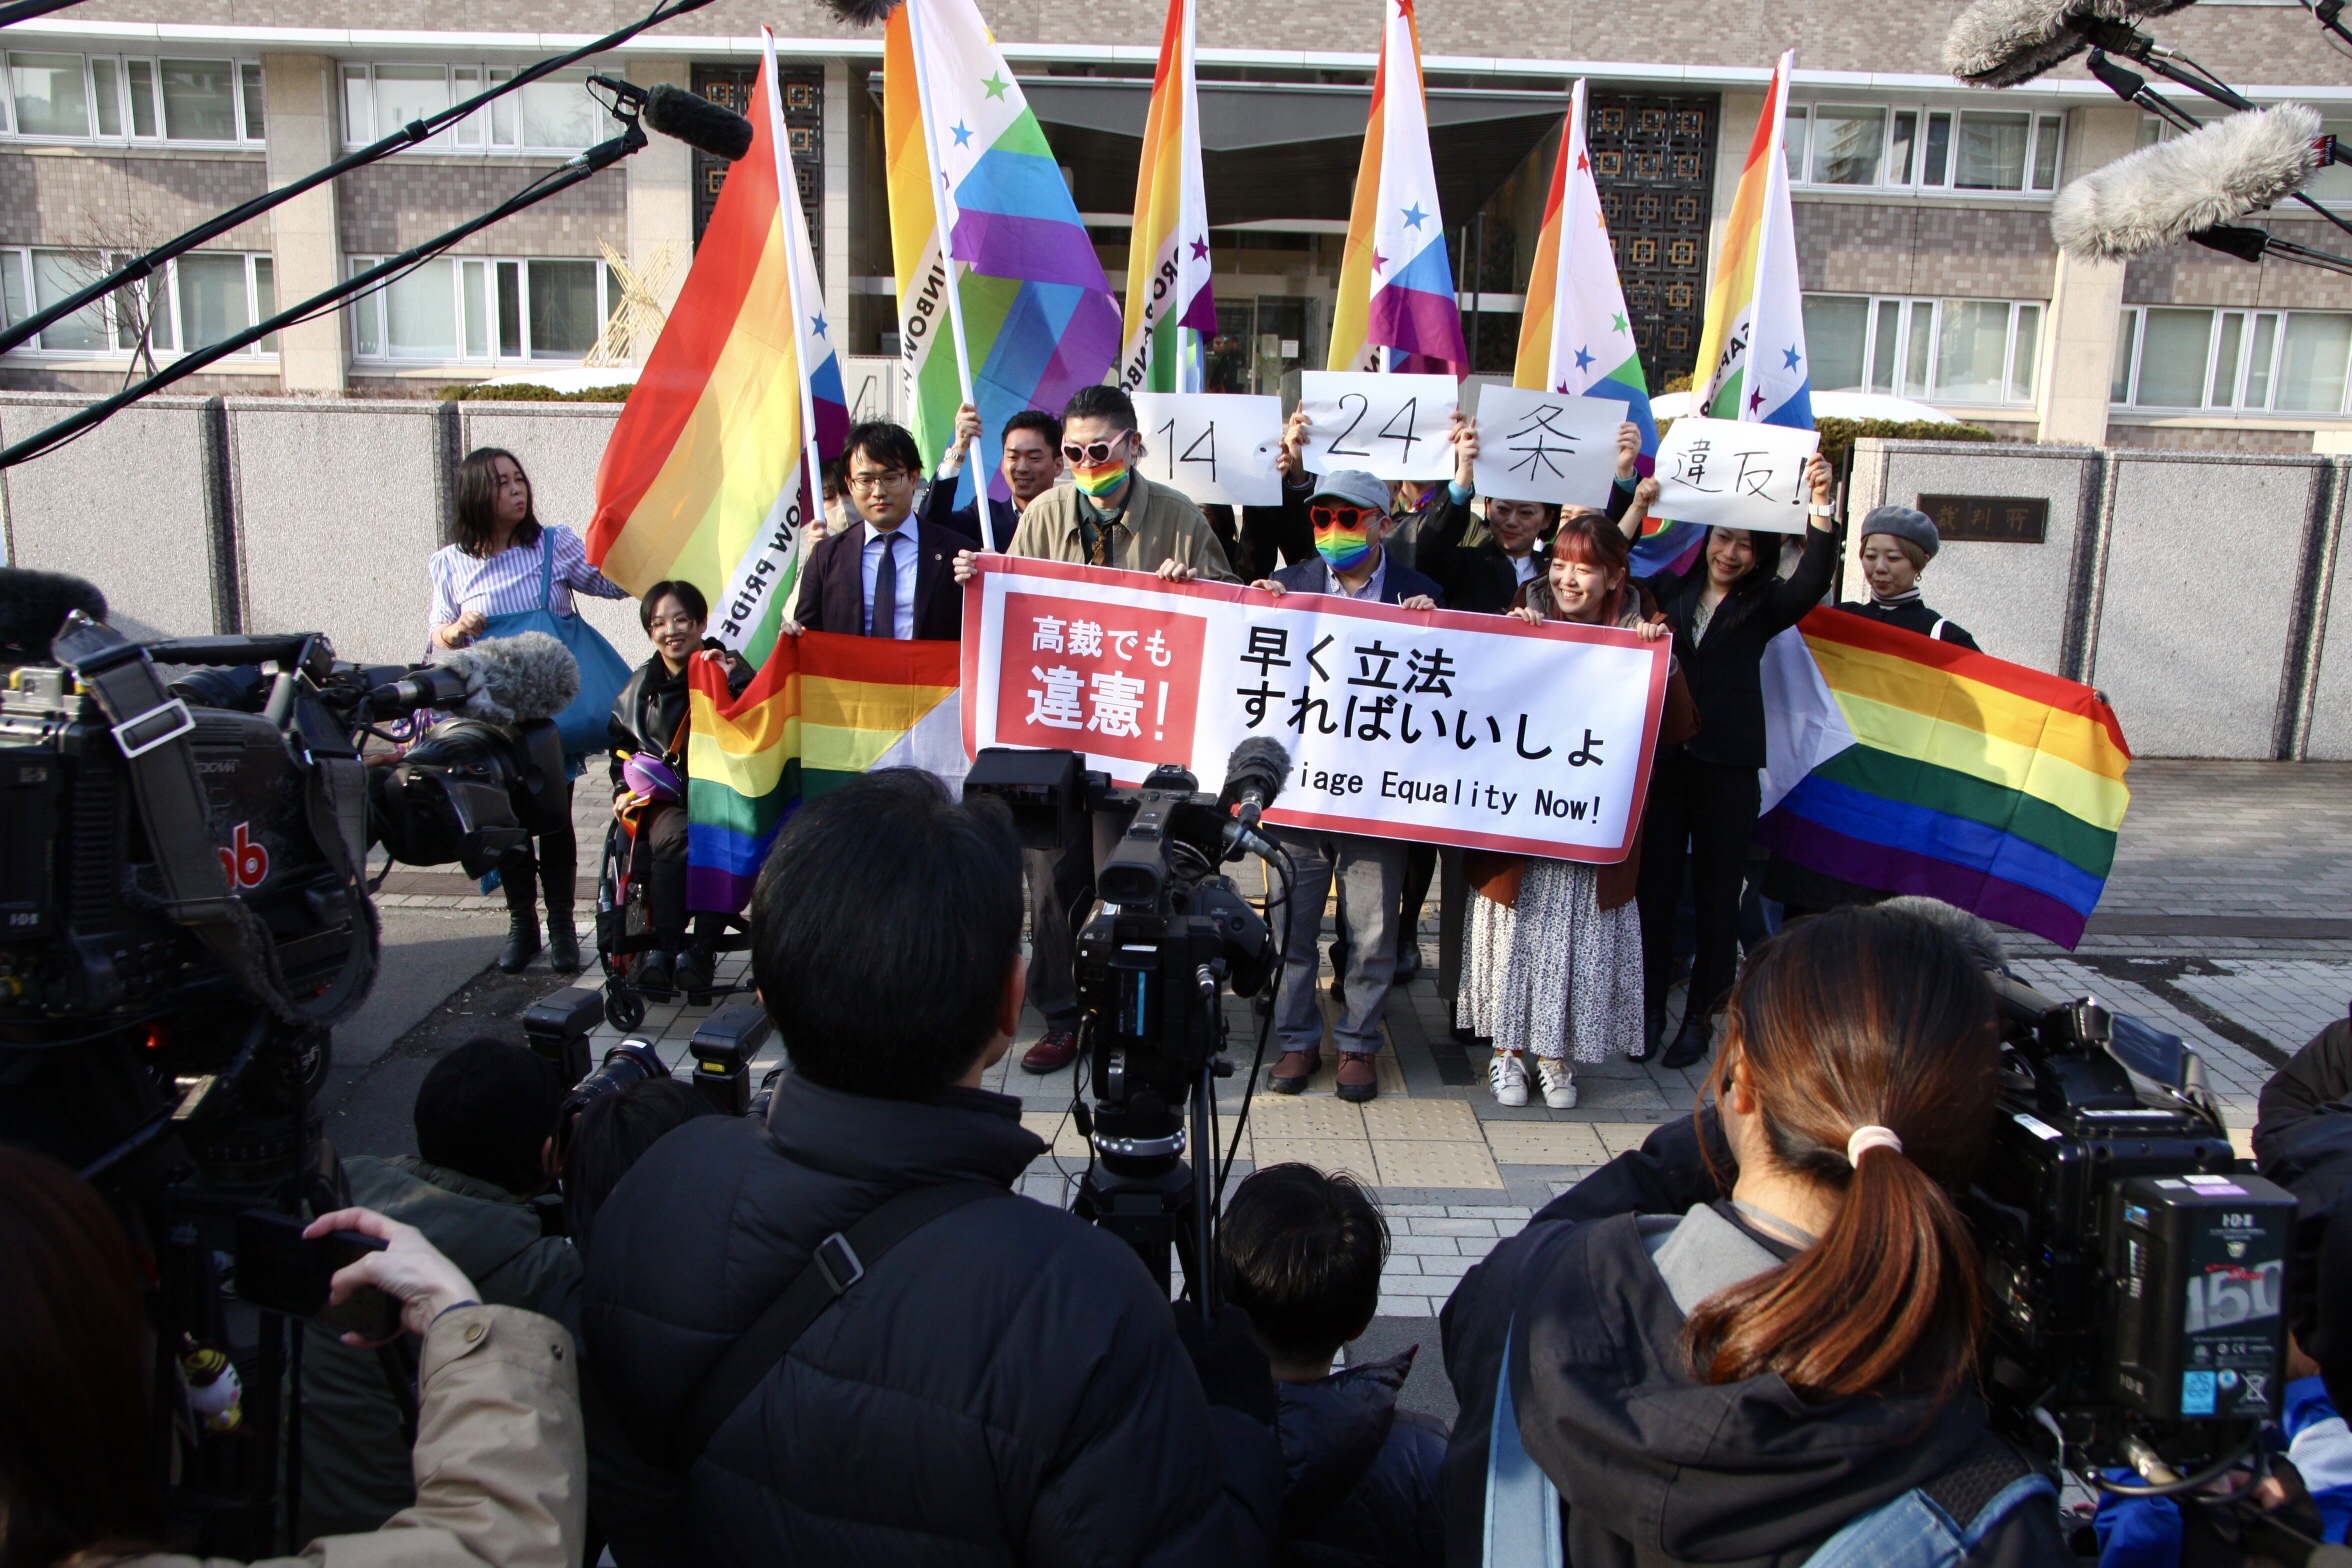 札幌地方裁判所の前で、「結婚の自由をすべての人に」北海道訴訟の原告と弁護団、支援者が、「高裁でも違憲！　早く立法すればいいしょ」と書かれた横断幕やレインボーカラーの旗を掲げている。